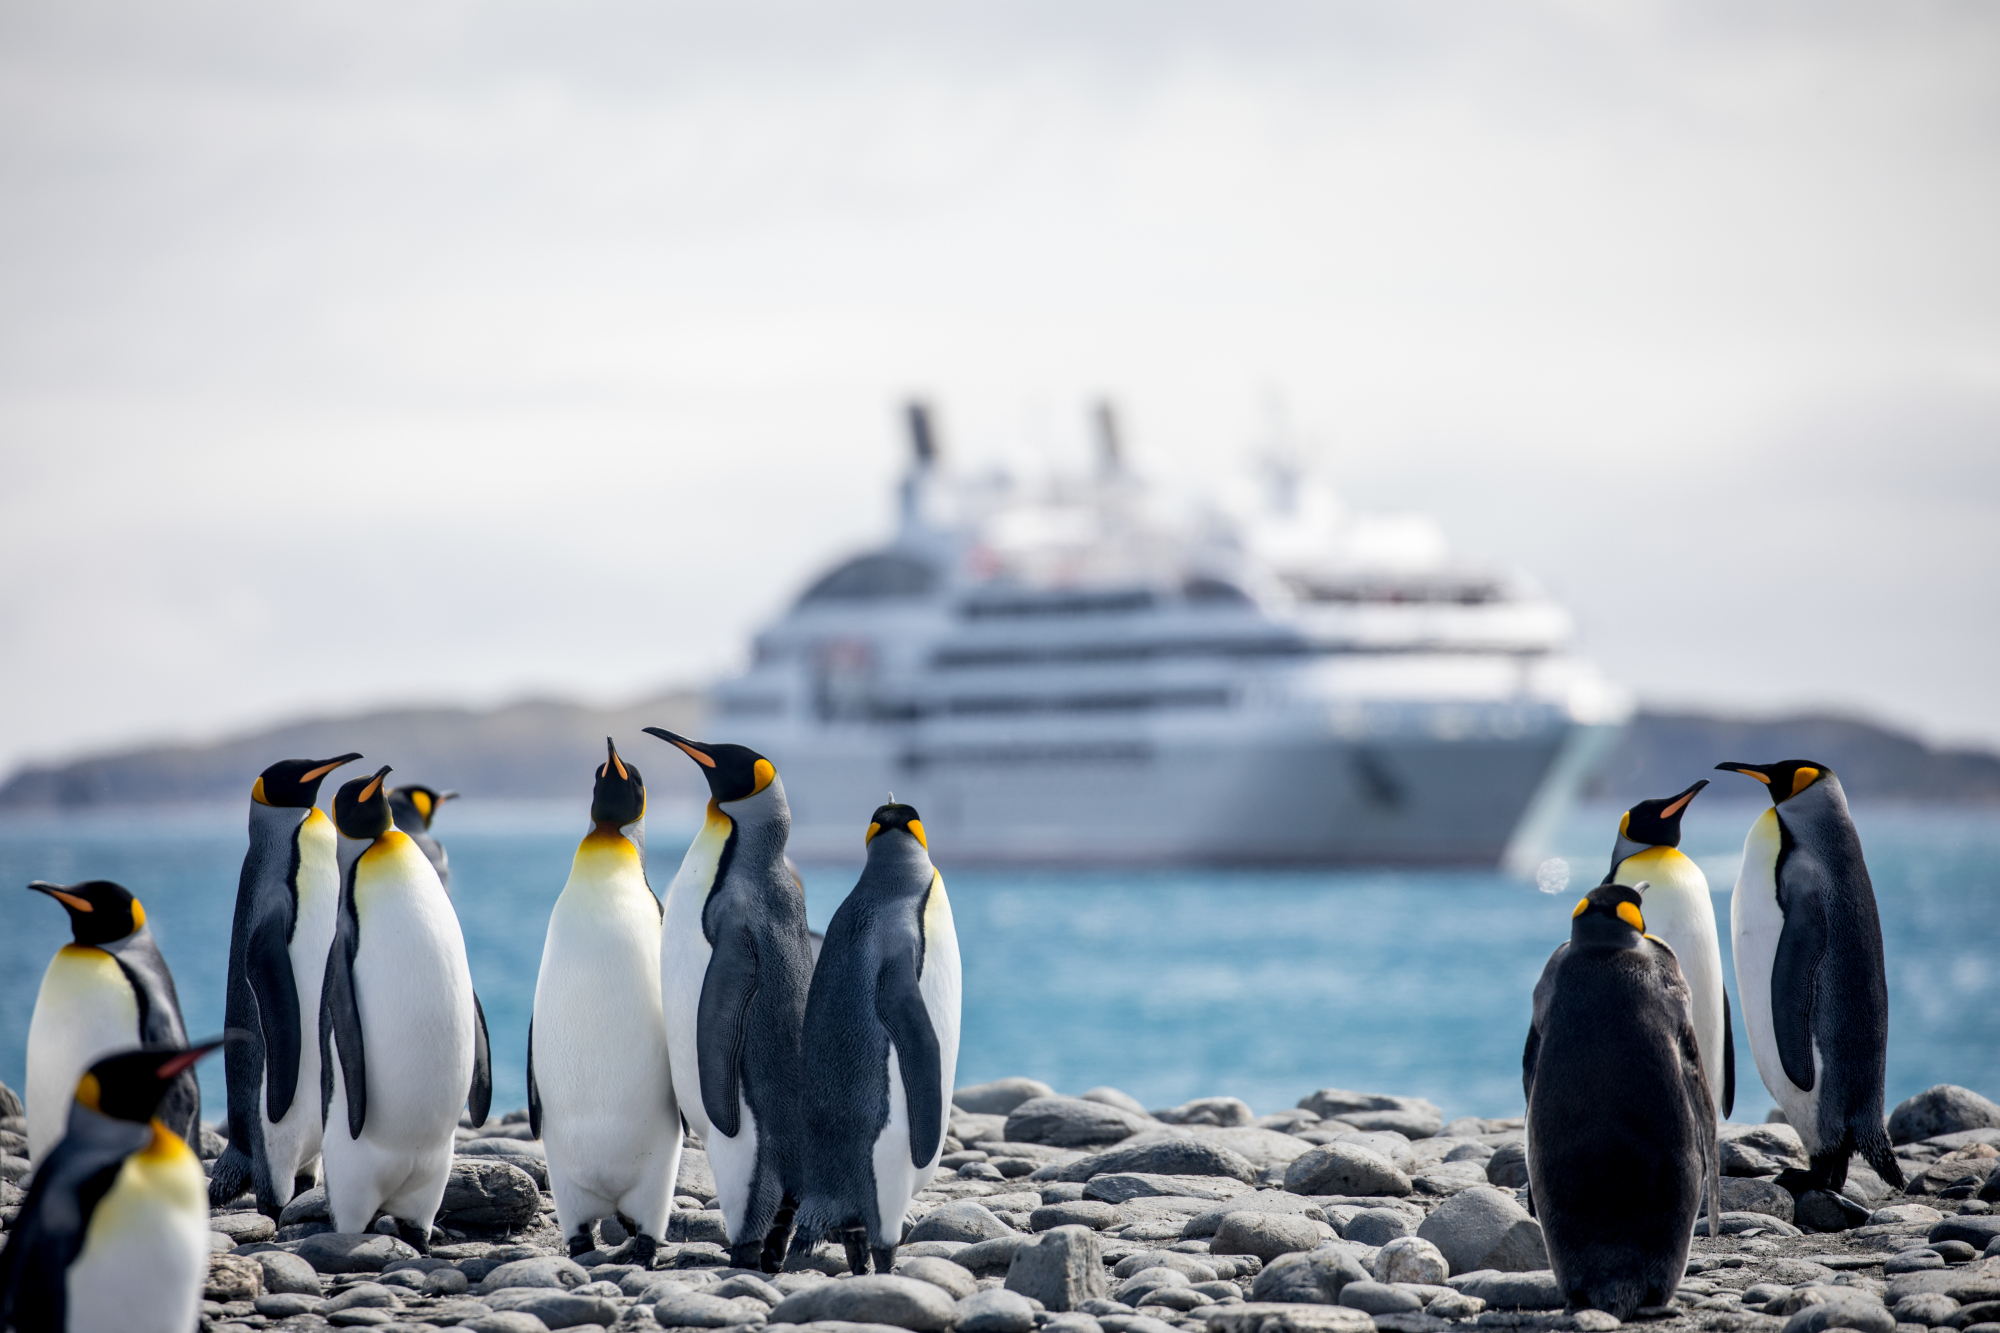 南极三岛传奇航线再启 以专业视角解锁南极密码